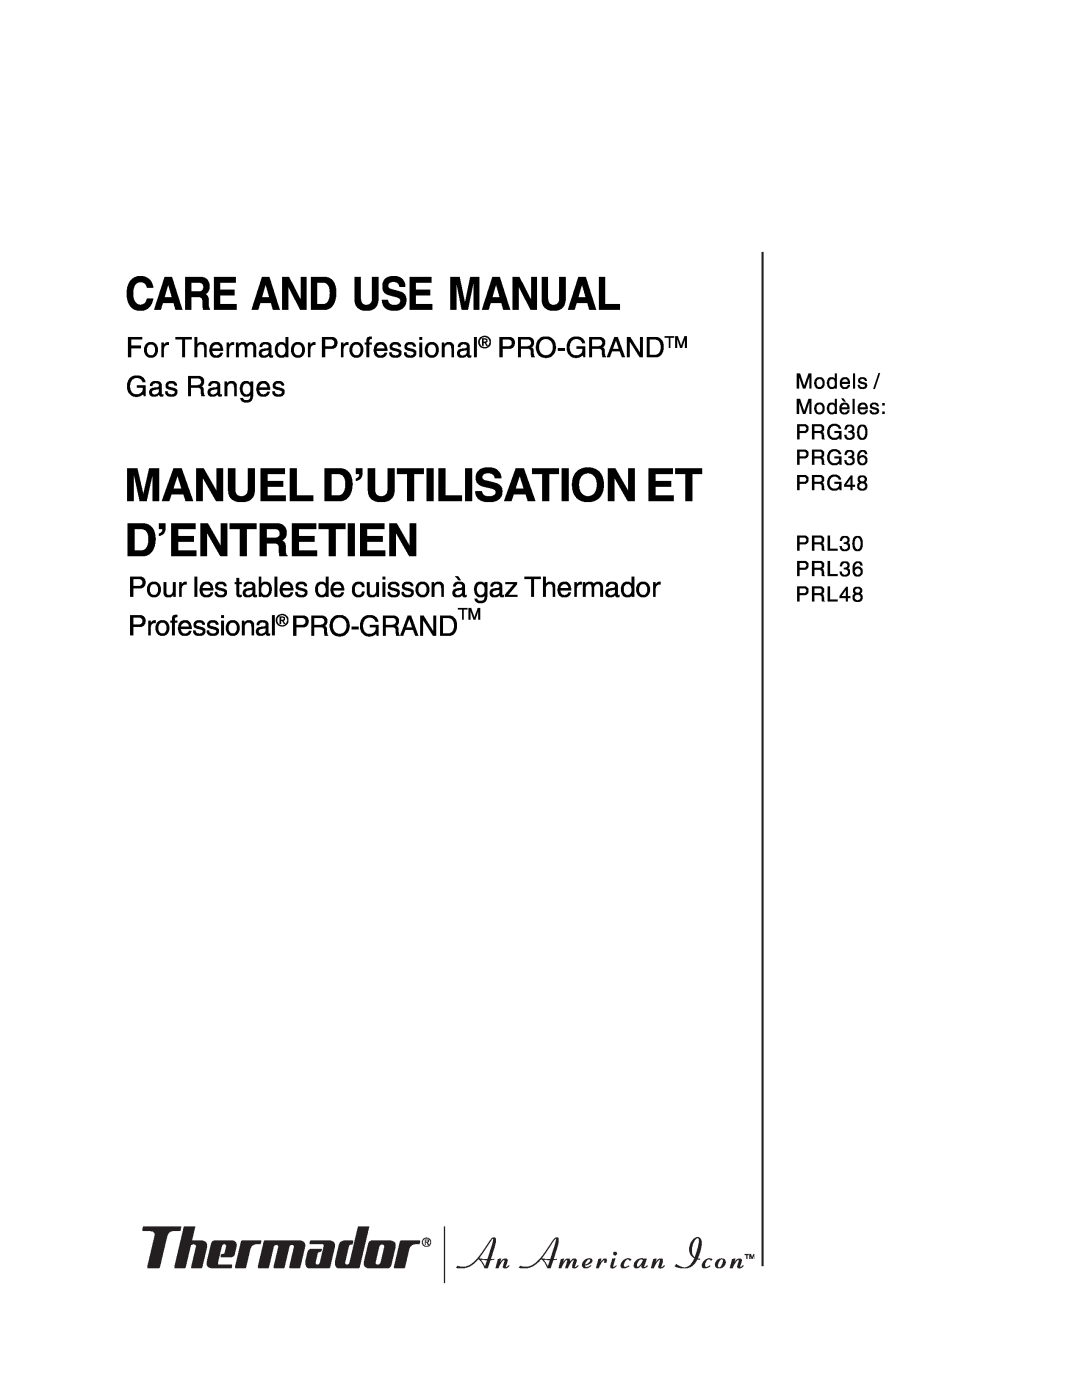 Thermador PRG36, PRG30 manual Care And Use Manual, Manuel D’Utilisation Et D’Entretien 